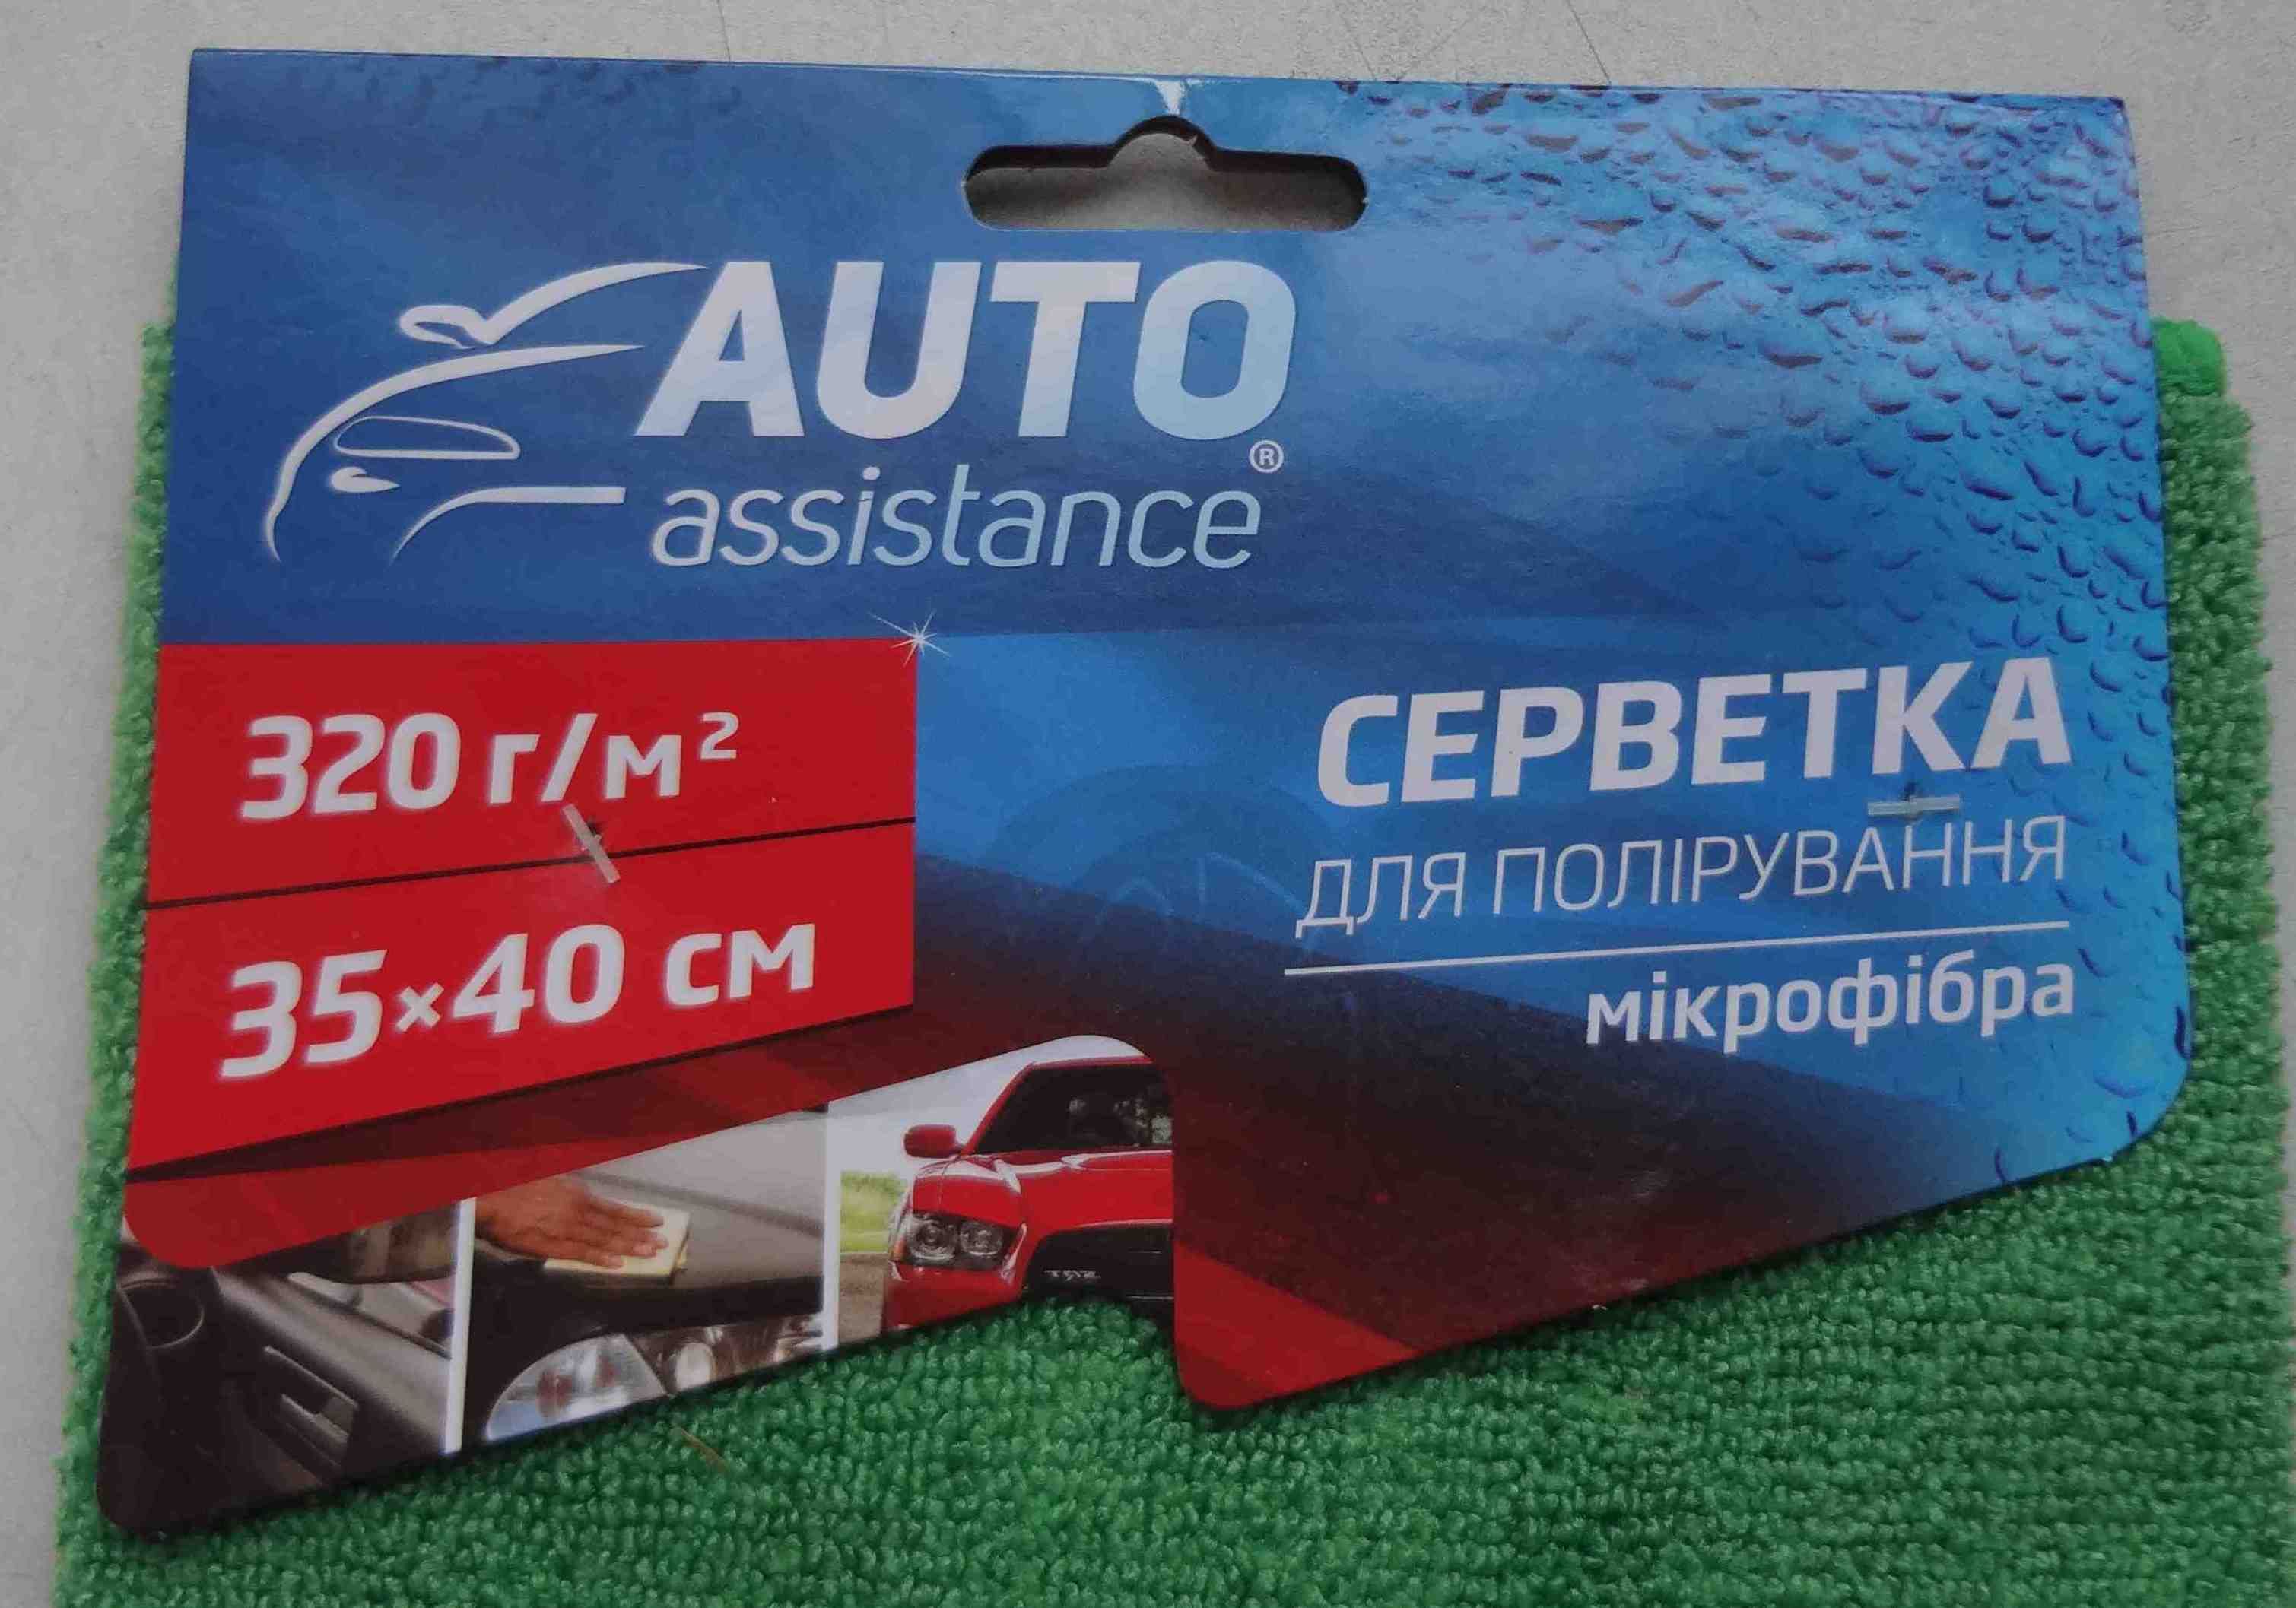 Салфетка микрофибра для полировки Auto assistance 35х40 см для авто